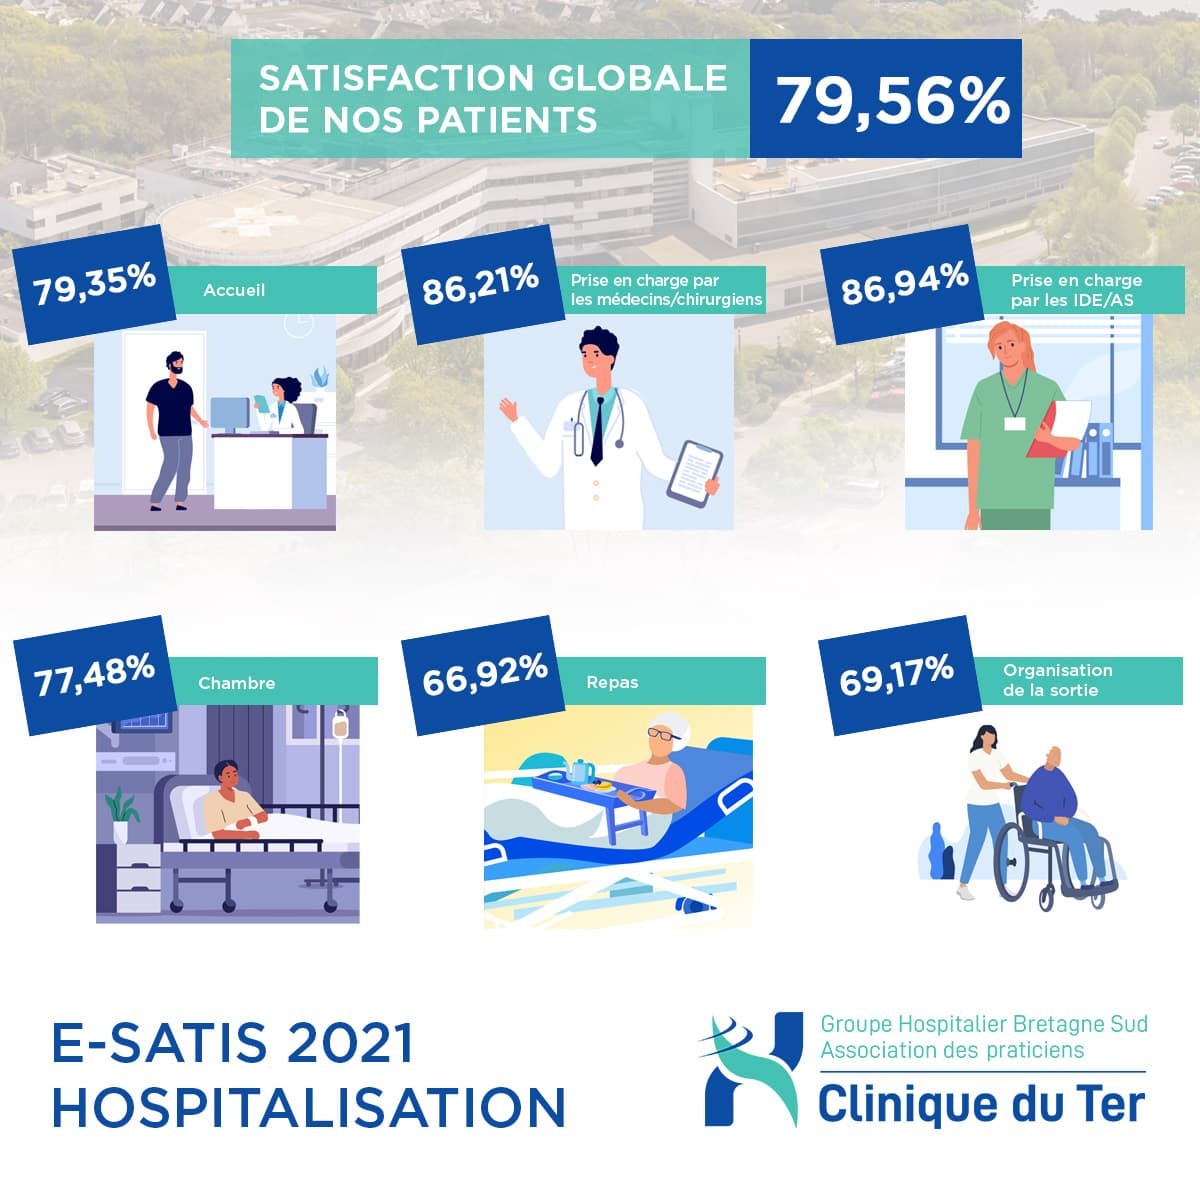 E-SATIS 2021 - HOSPITALISATION :  La Clinique du Ter noté « A  » en terme de satisfaction patient